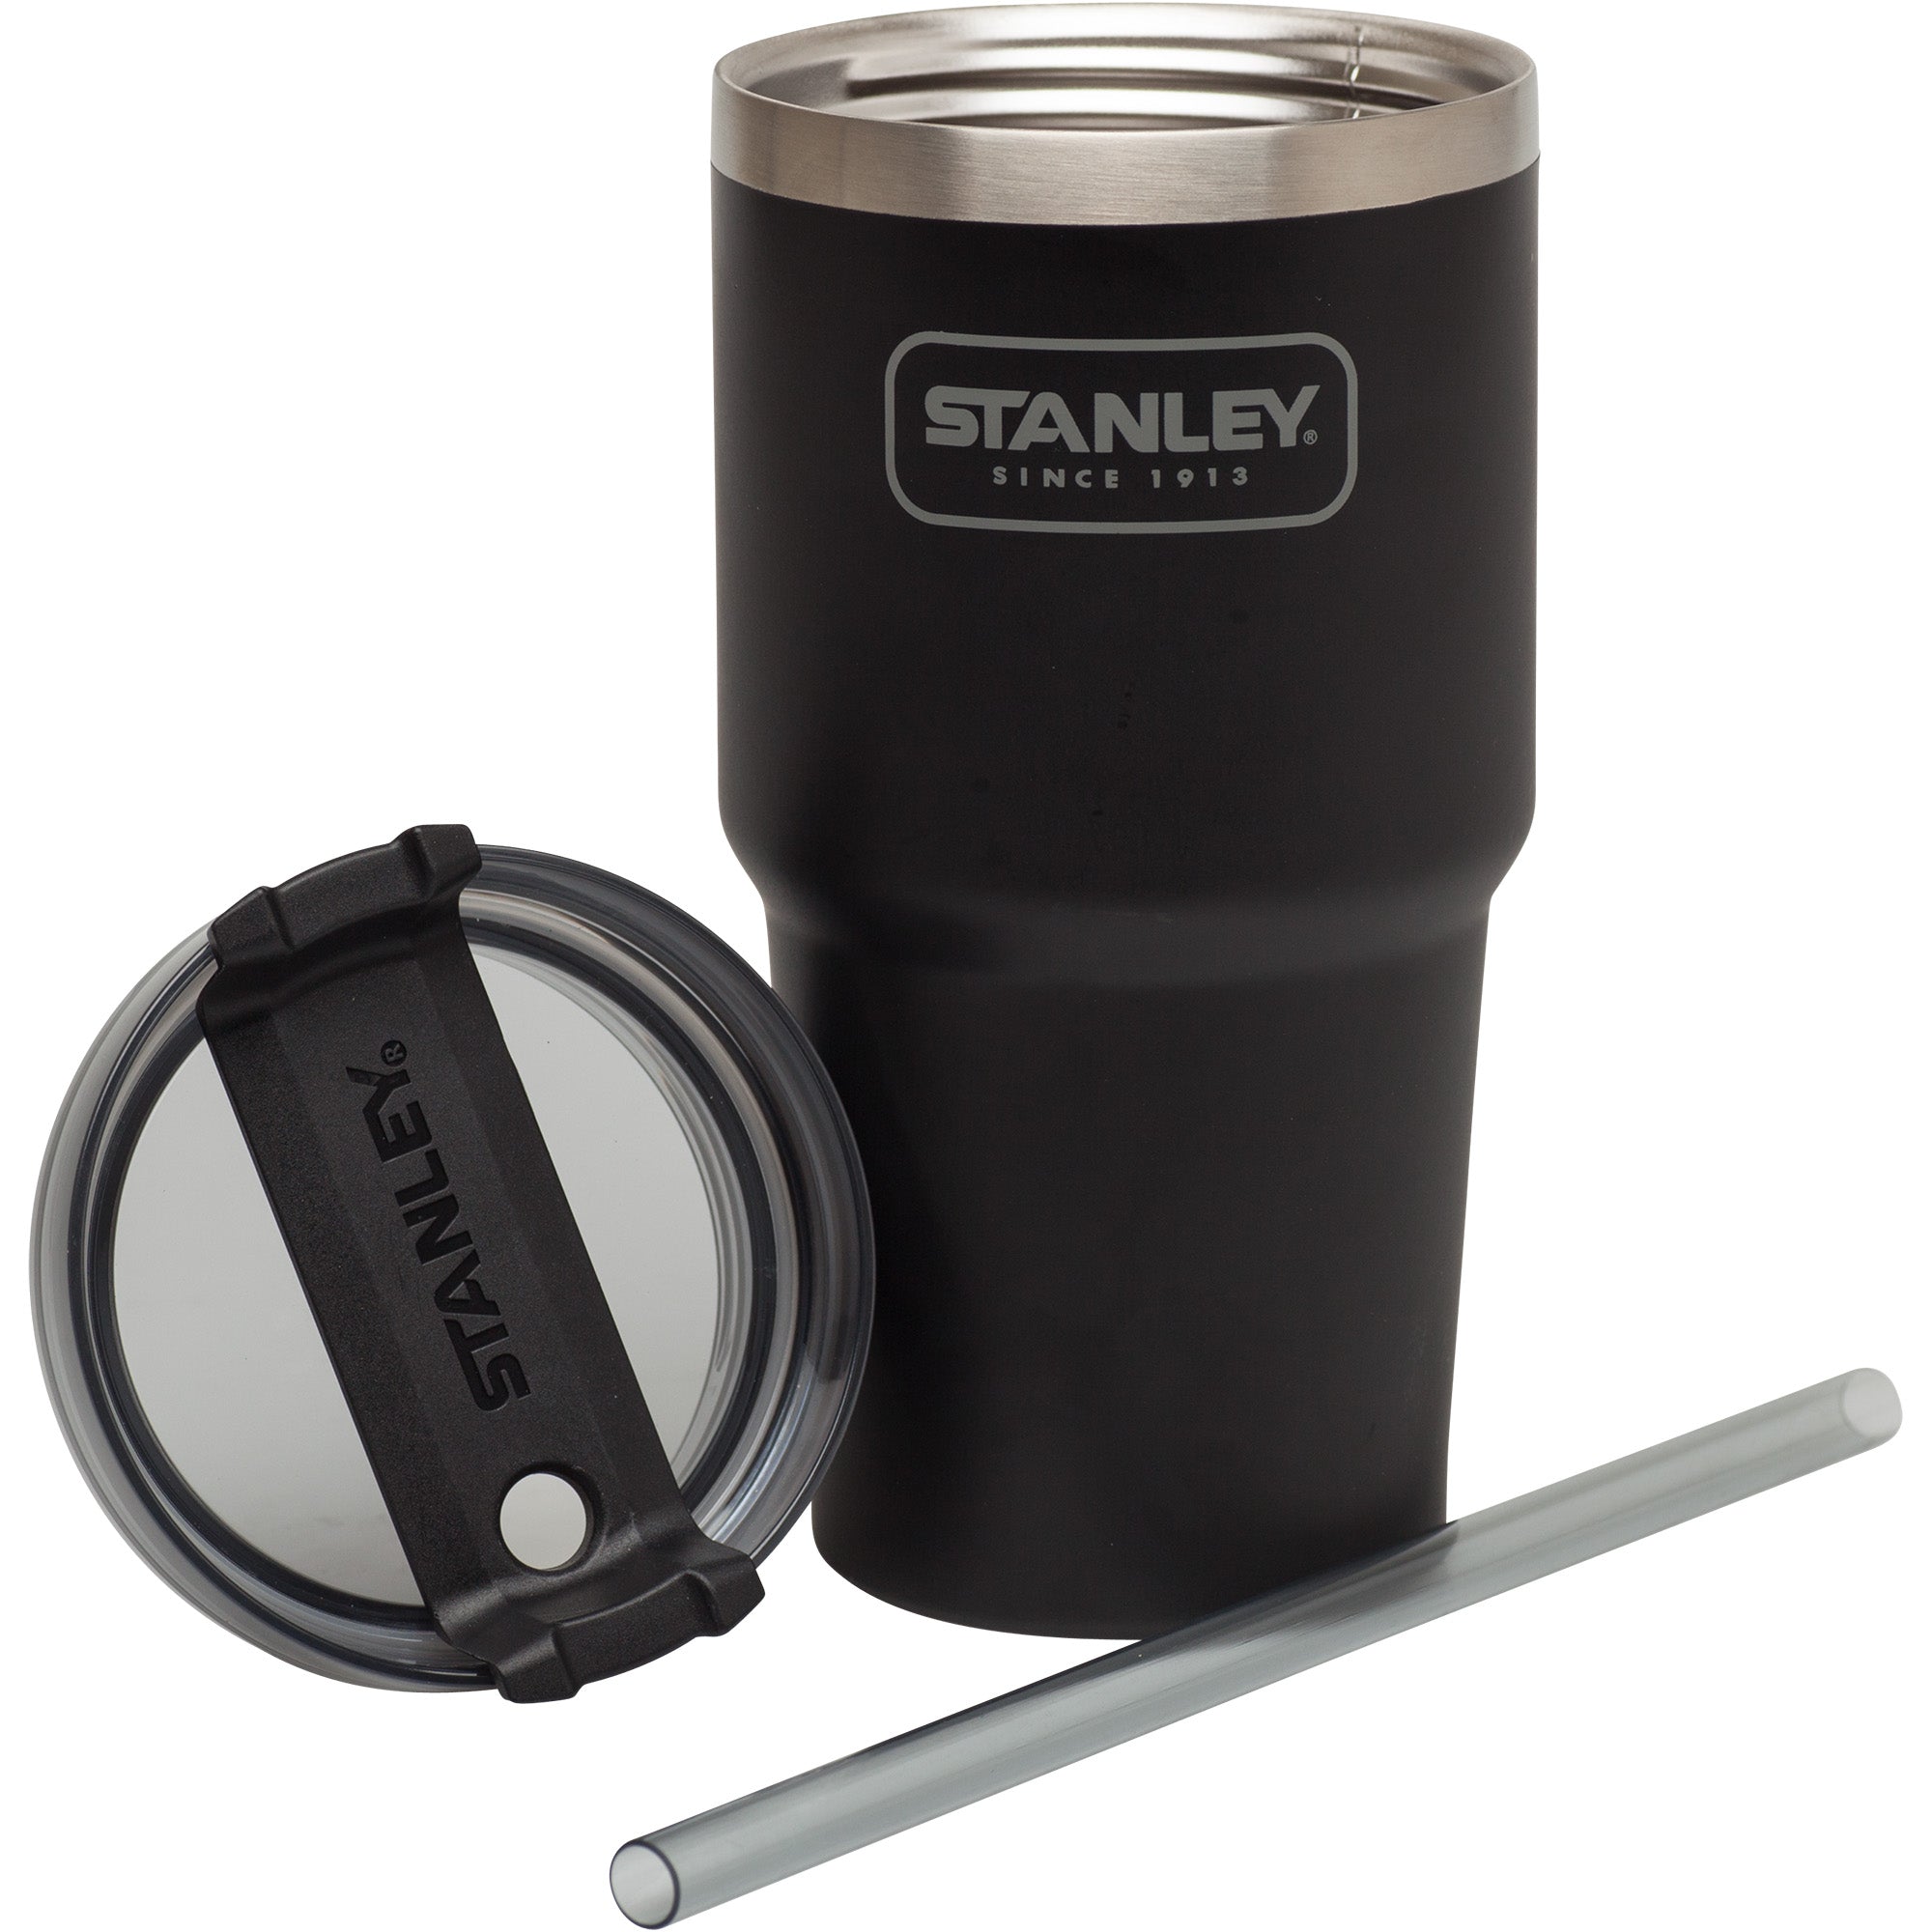 stanley vacuum cup